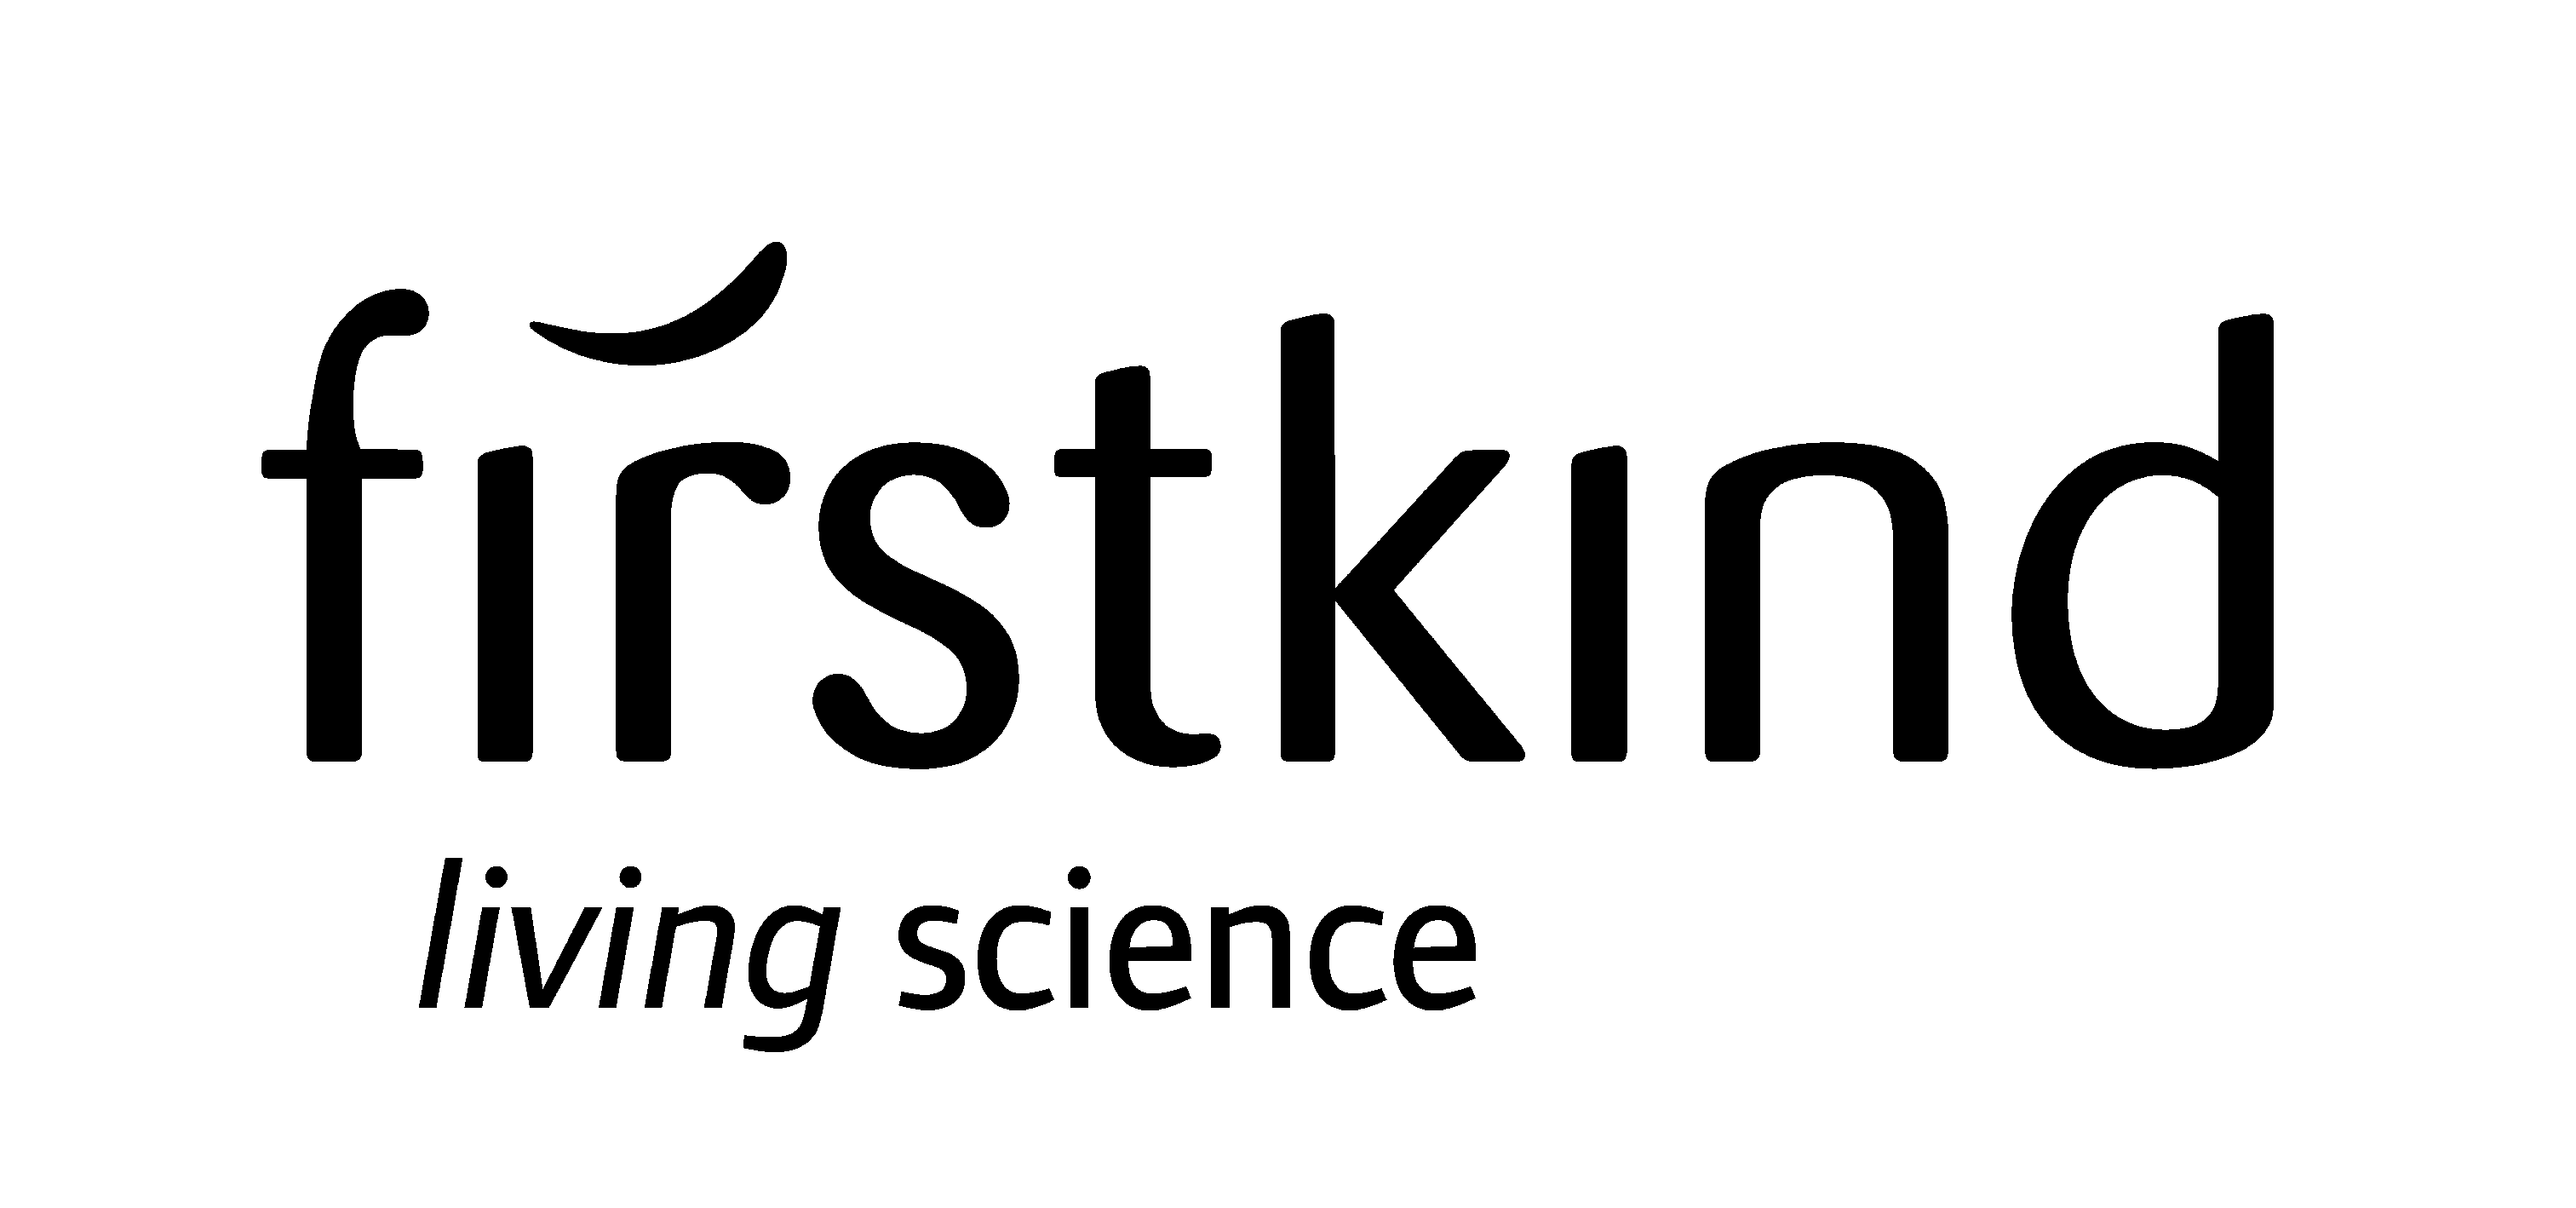 Firstkind Ltd